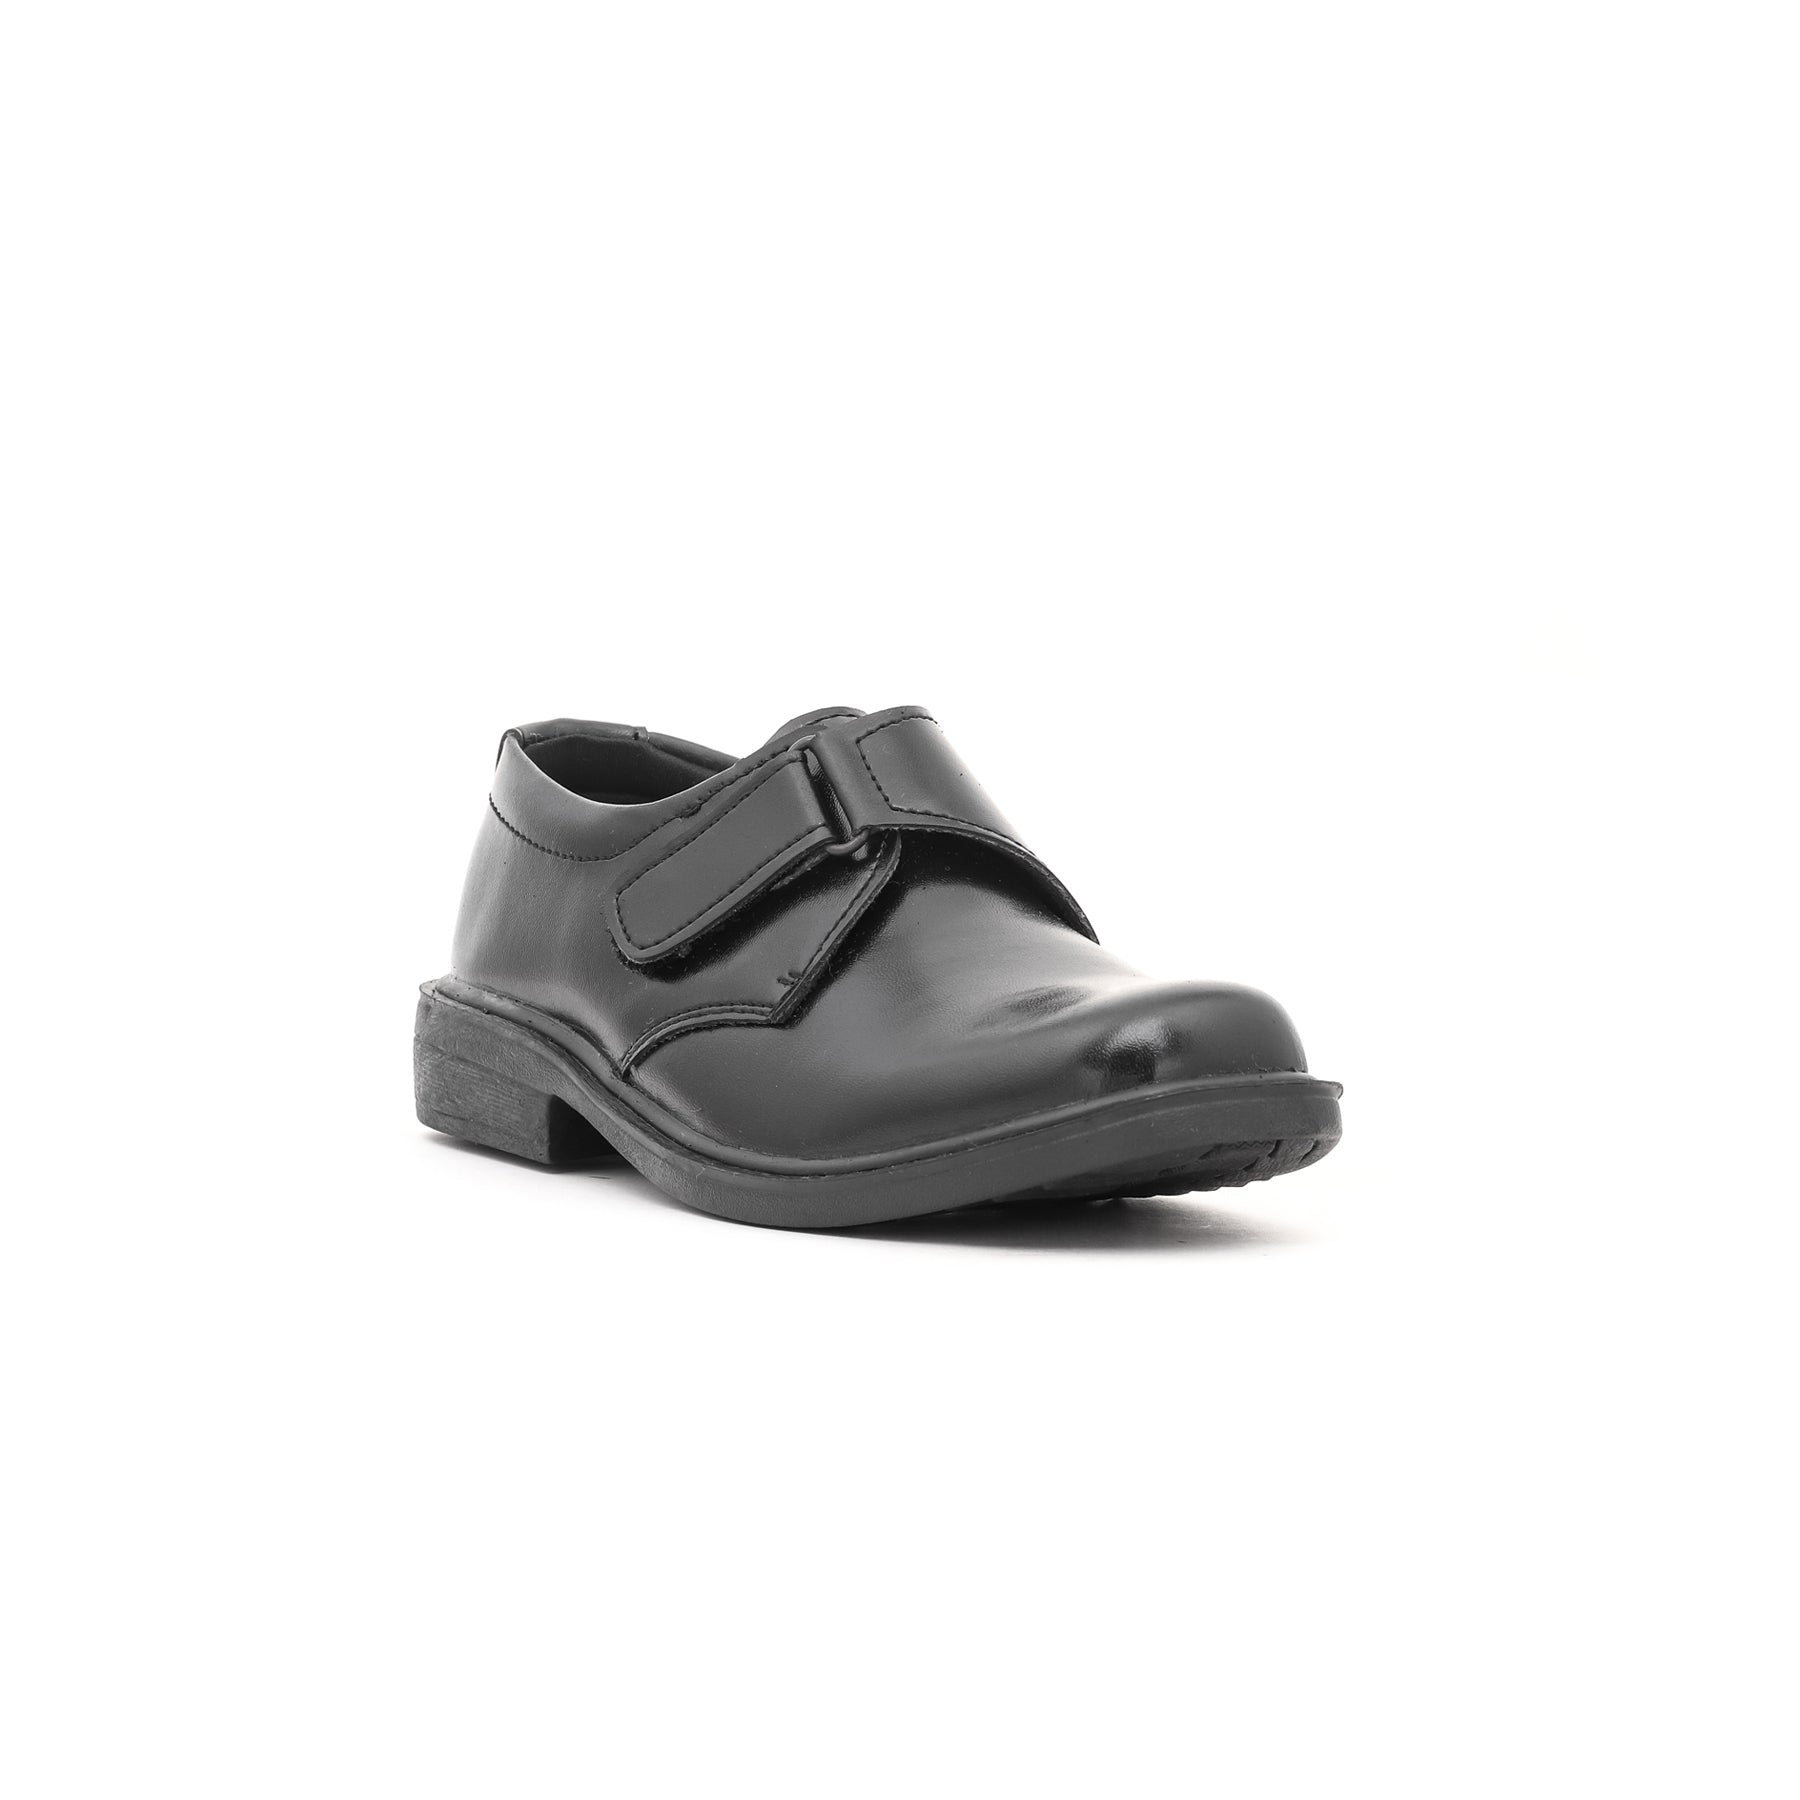 Boys Black School Shoes SK1055